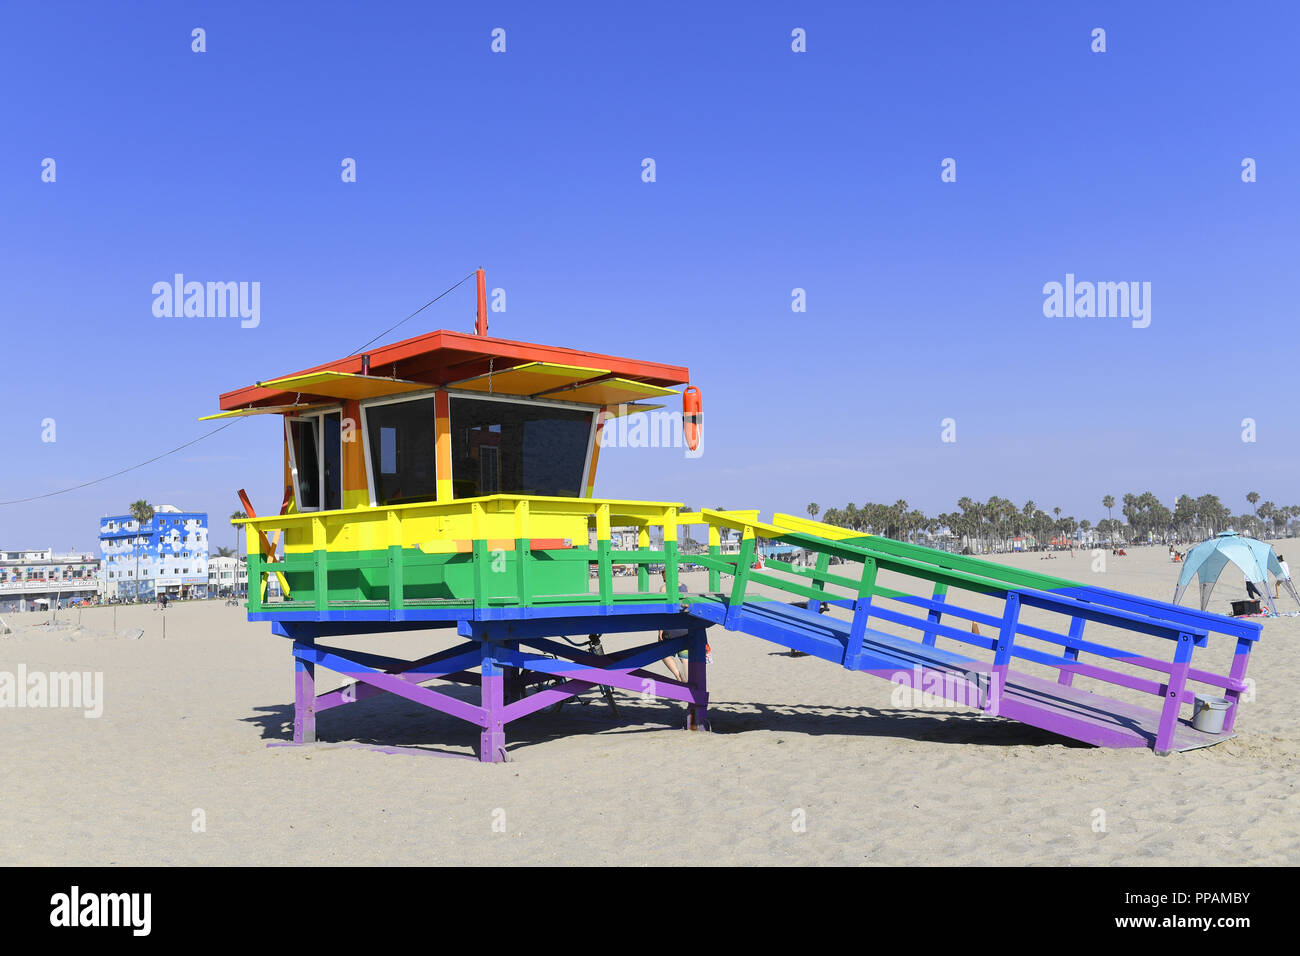 Cabane de plage peint en couleurs fierté sur Venice Beach, Los Angeles, Californie, USA Banque D'Images